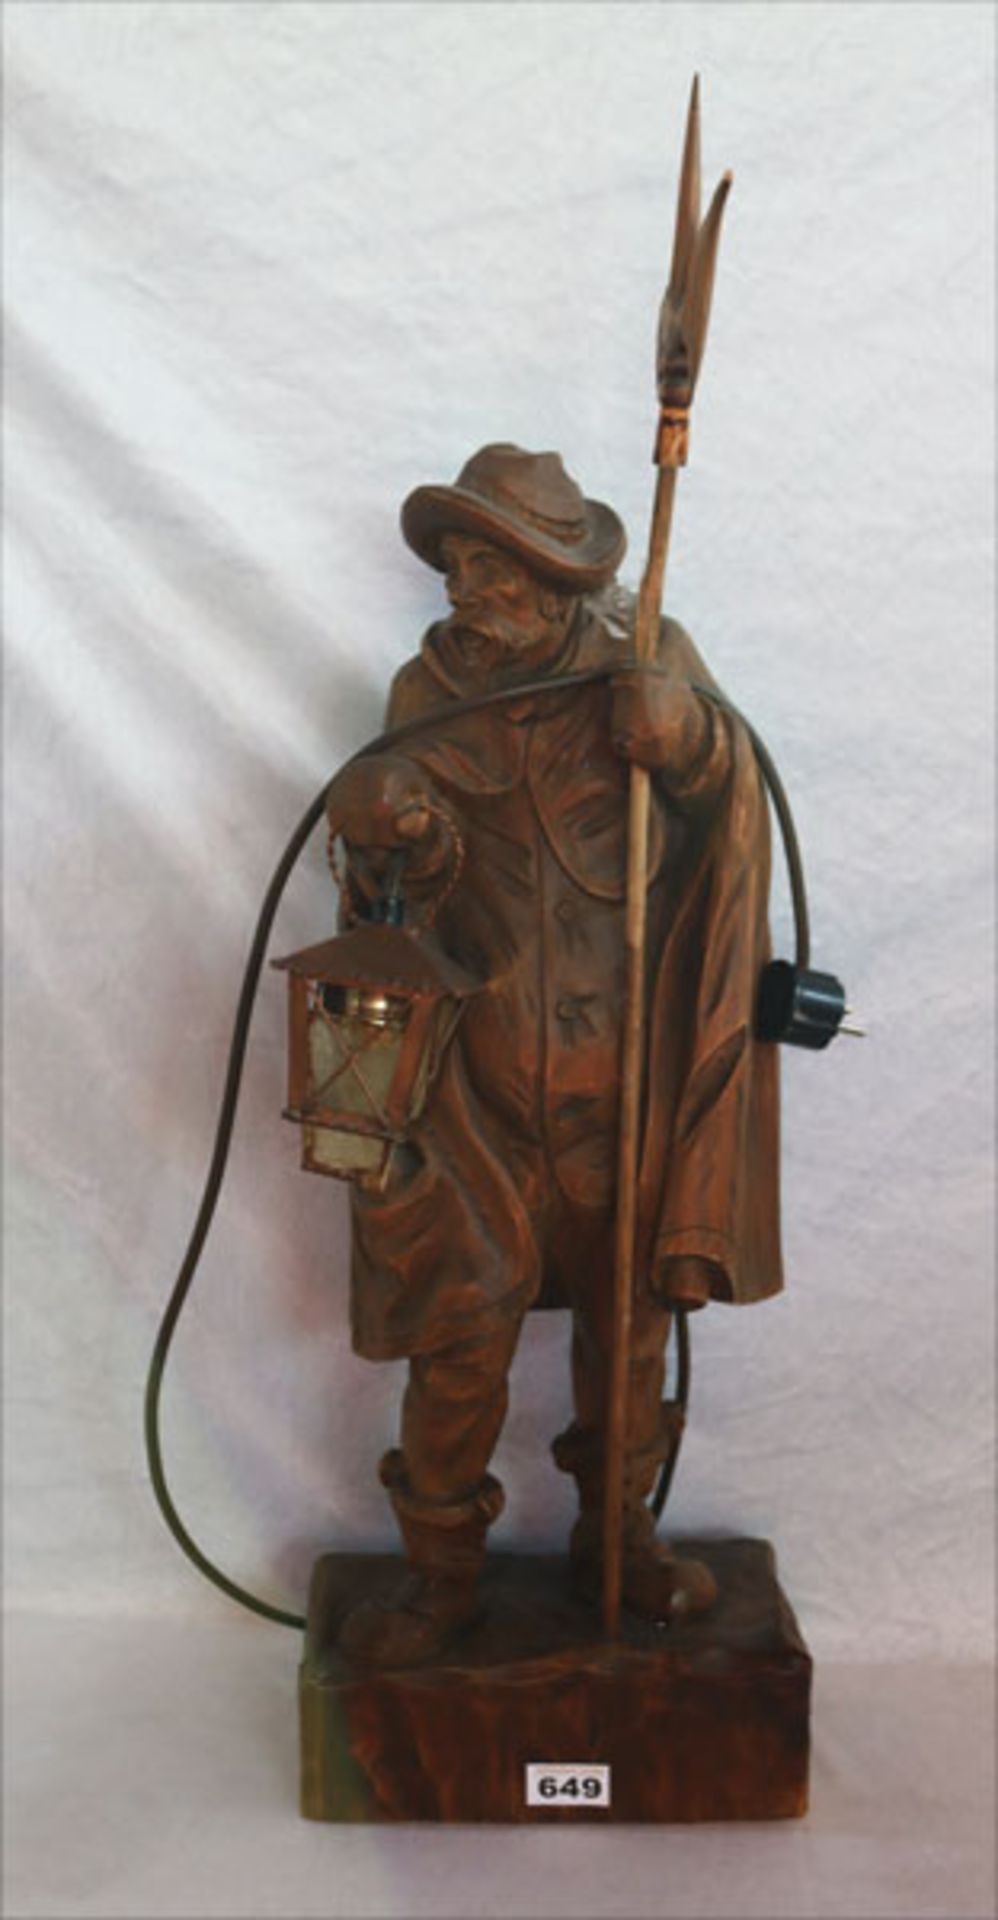 Holz Figurenskulptur 'Nachtwächter mit elektifizierter Laterne', braun gebeizt, H 78 cm, Funktion